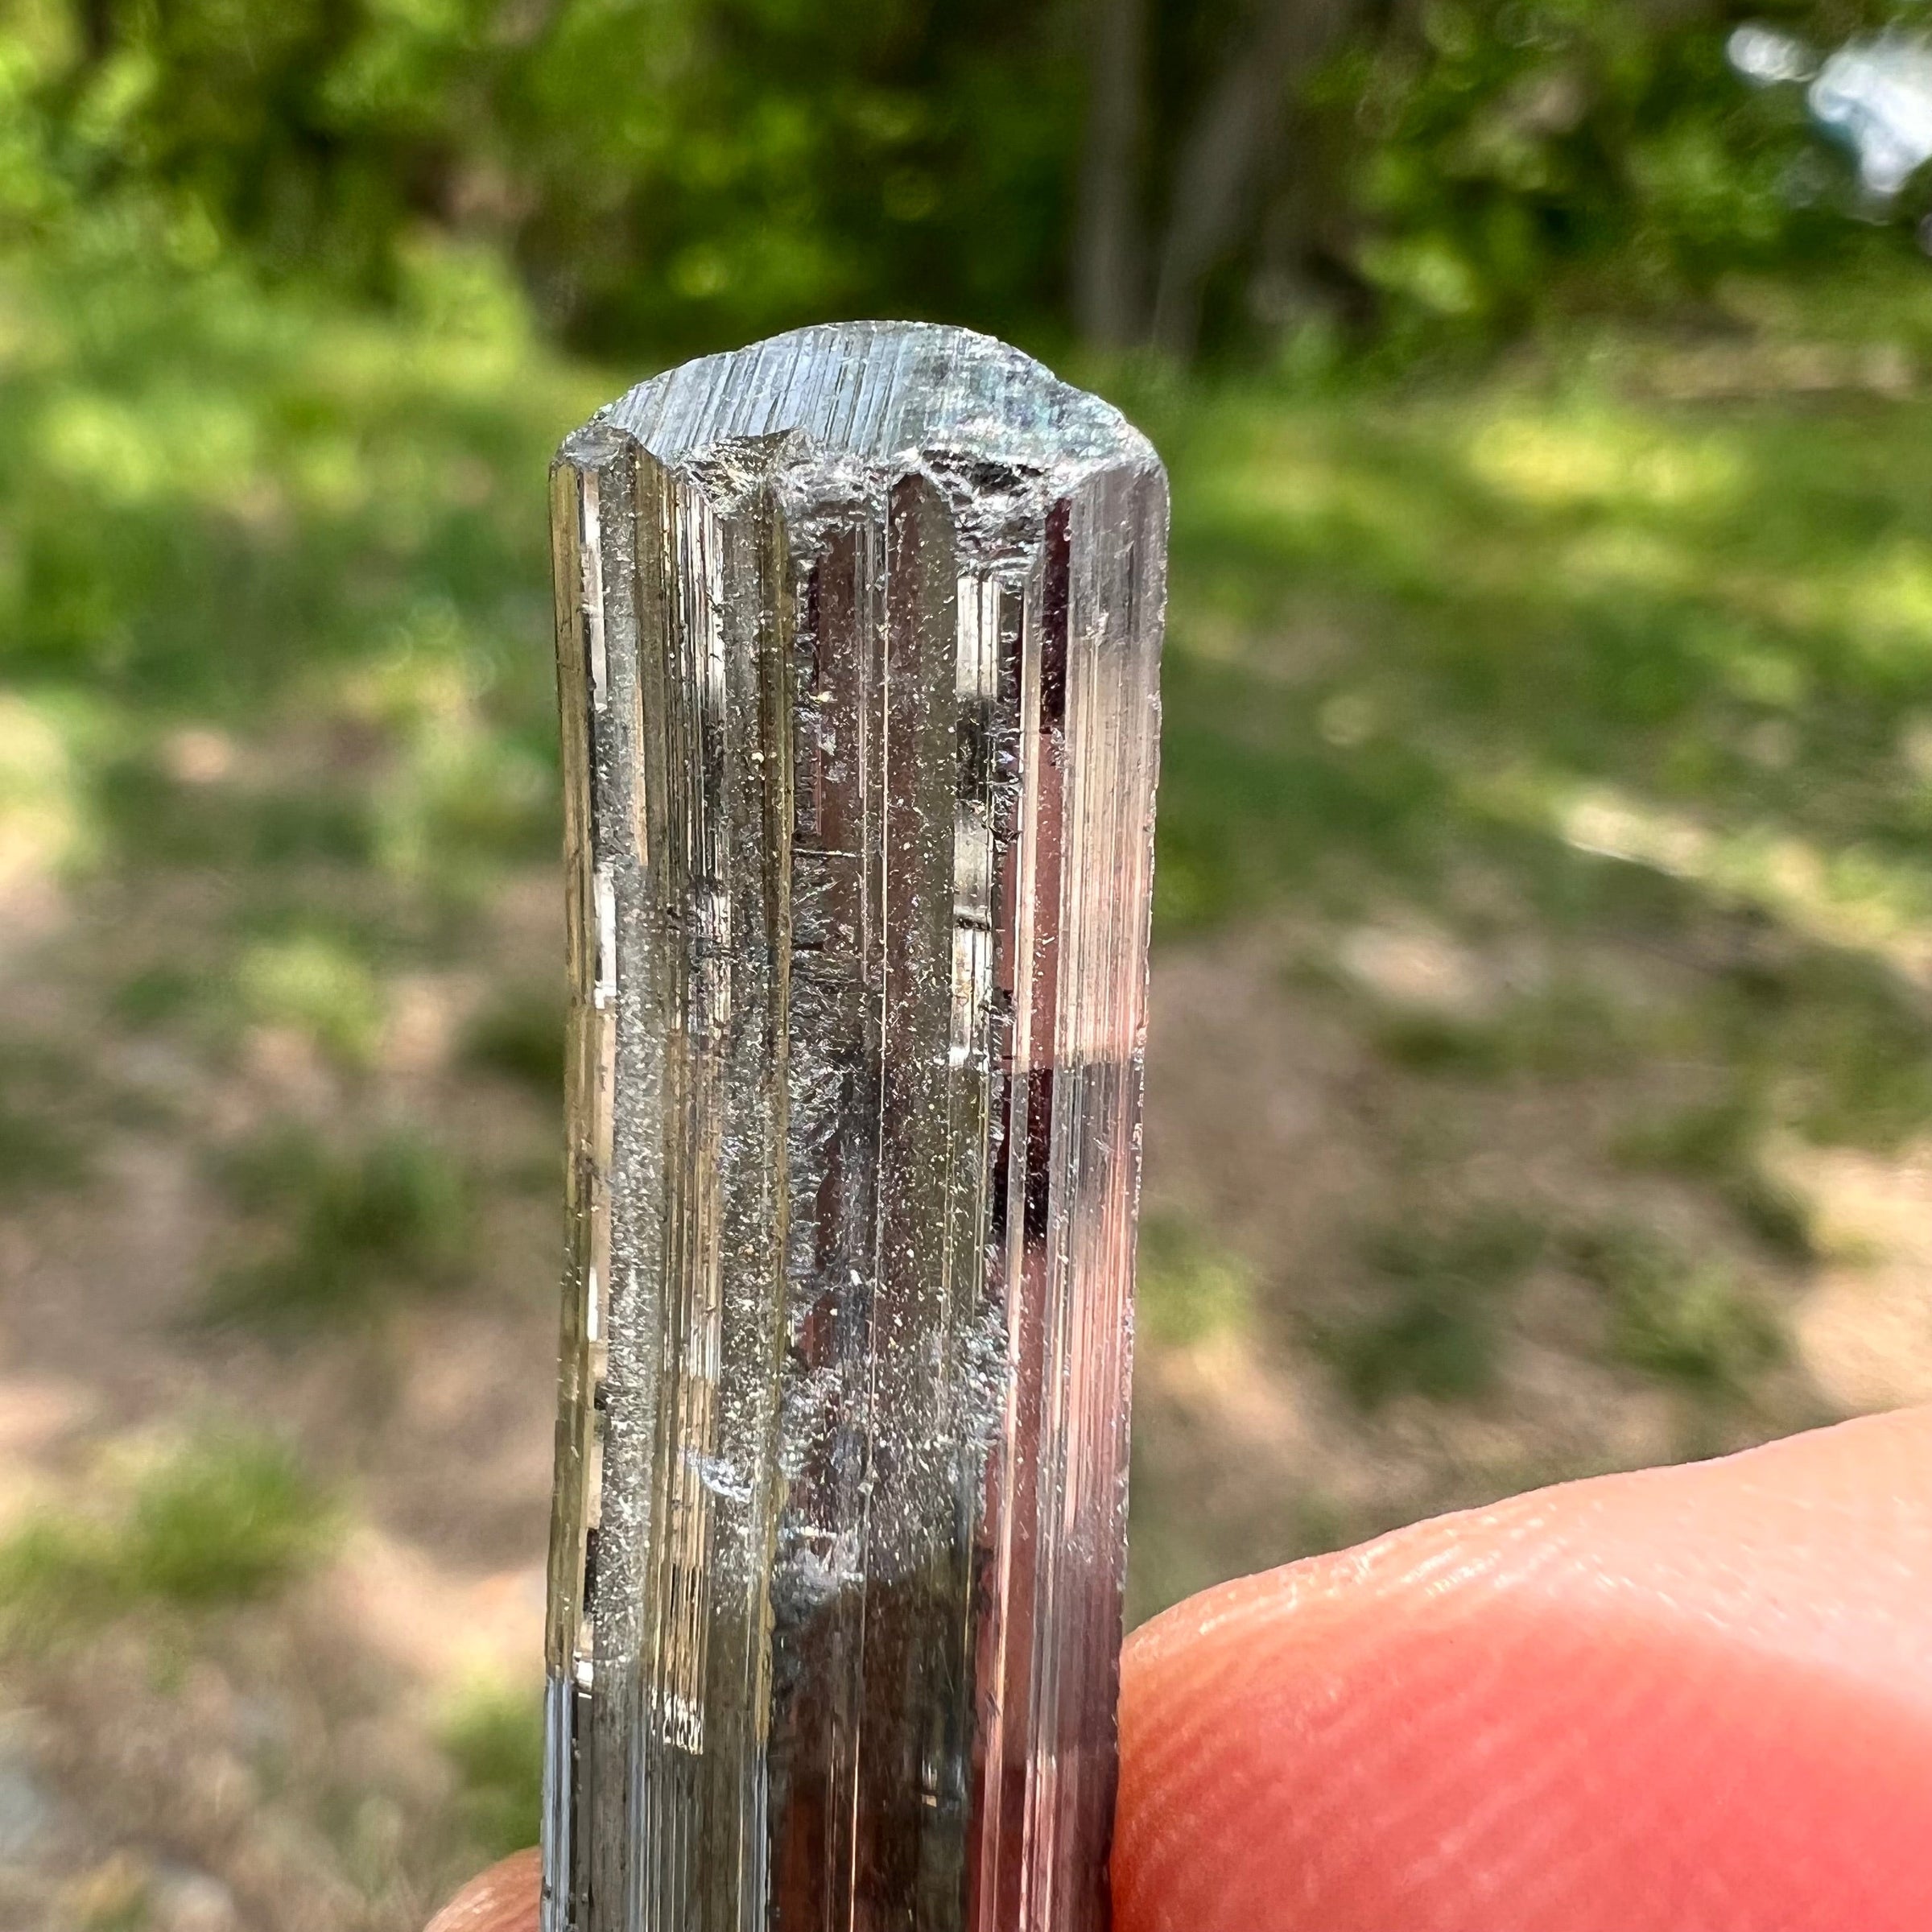 Stibnite Crystal #2-Moldavite Life